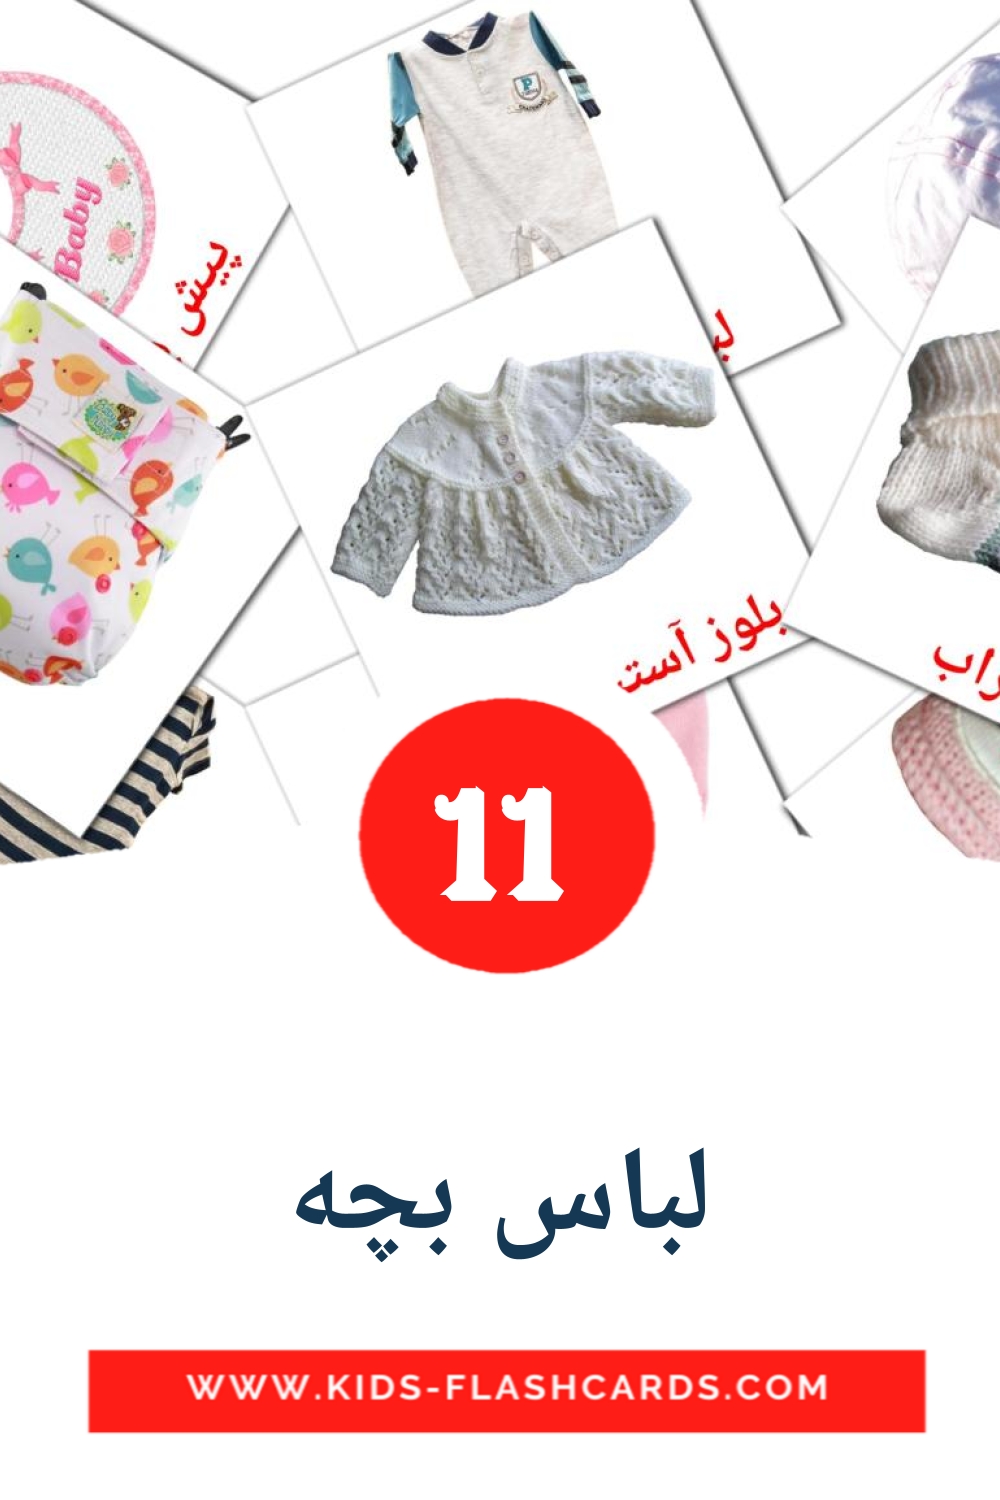 11 tarjetas didacticas de لباس بچه para el jardín de infancia en persa